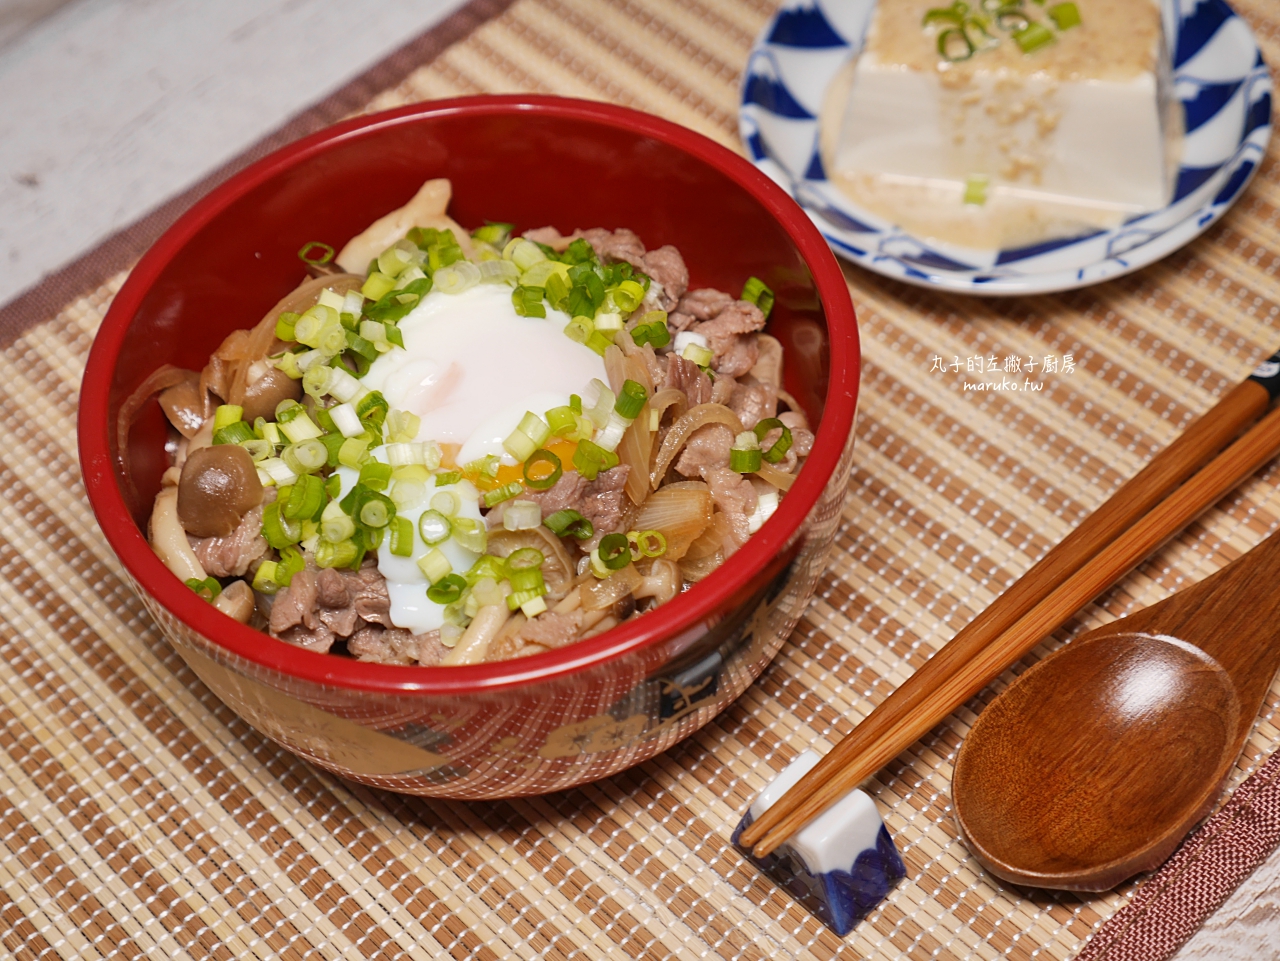 【食譜】牛丼 簡單醬汁做日式牛肉蓋飯 10分鐘上菜 快速晚餐做法